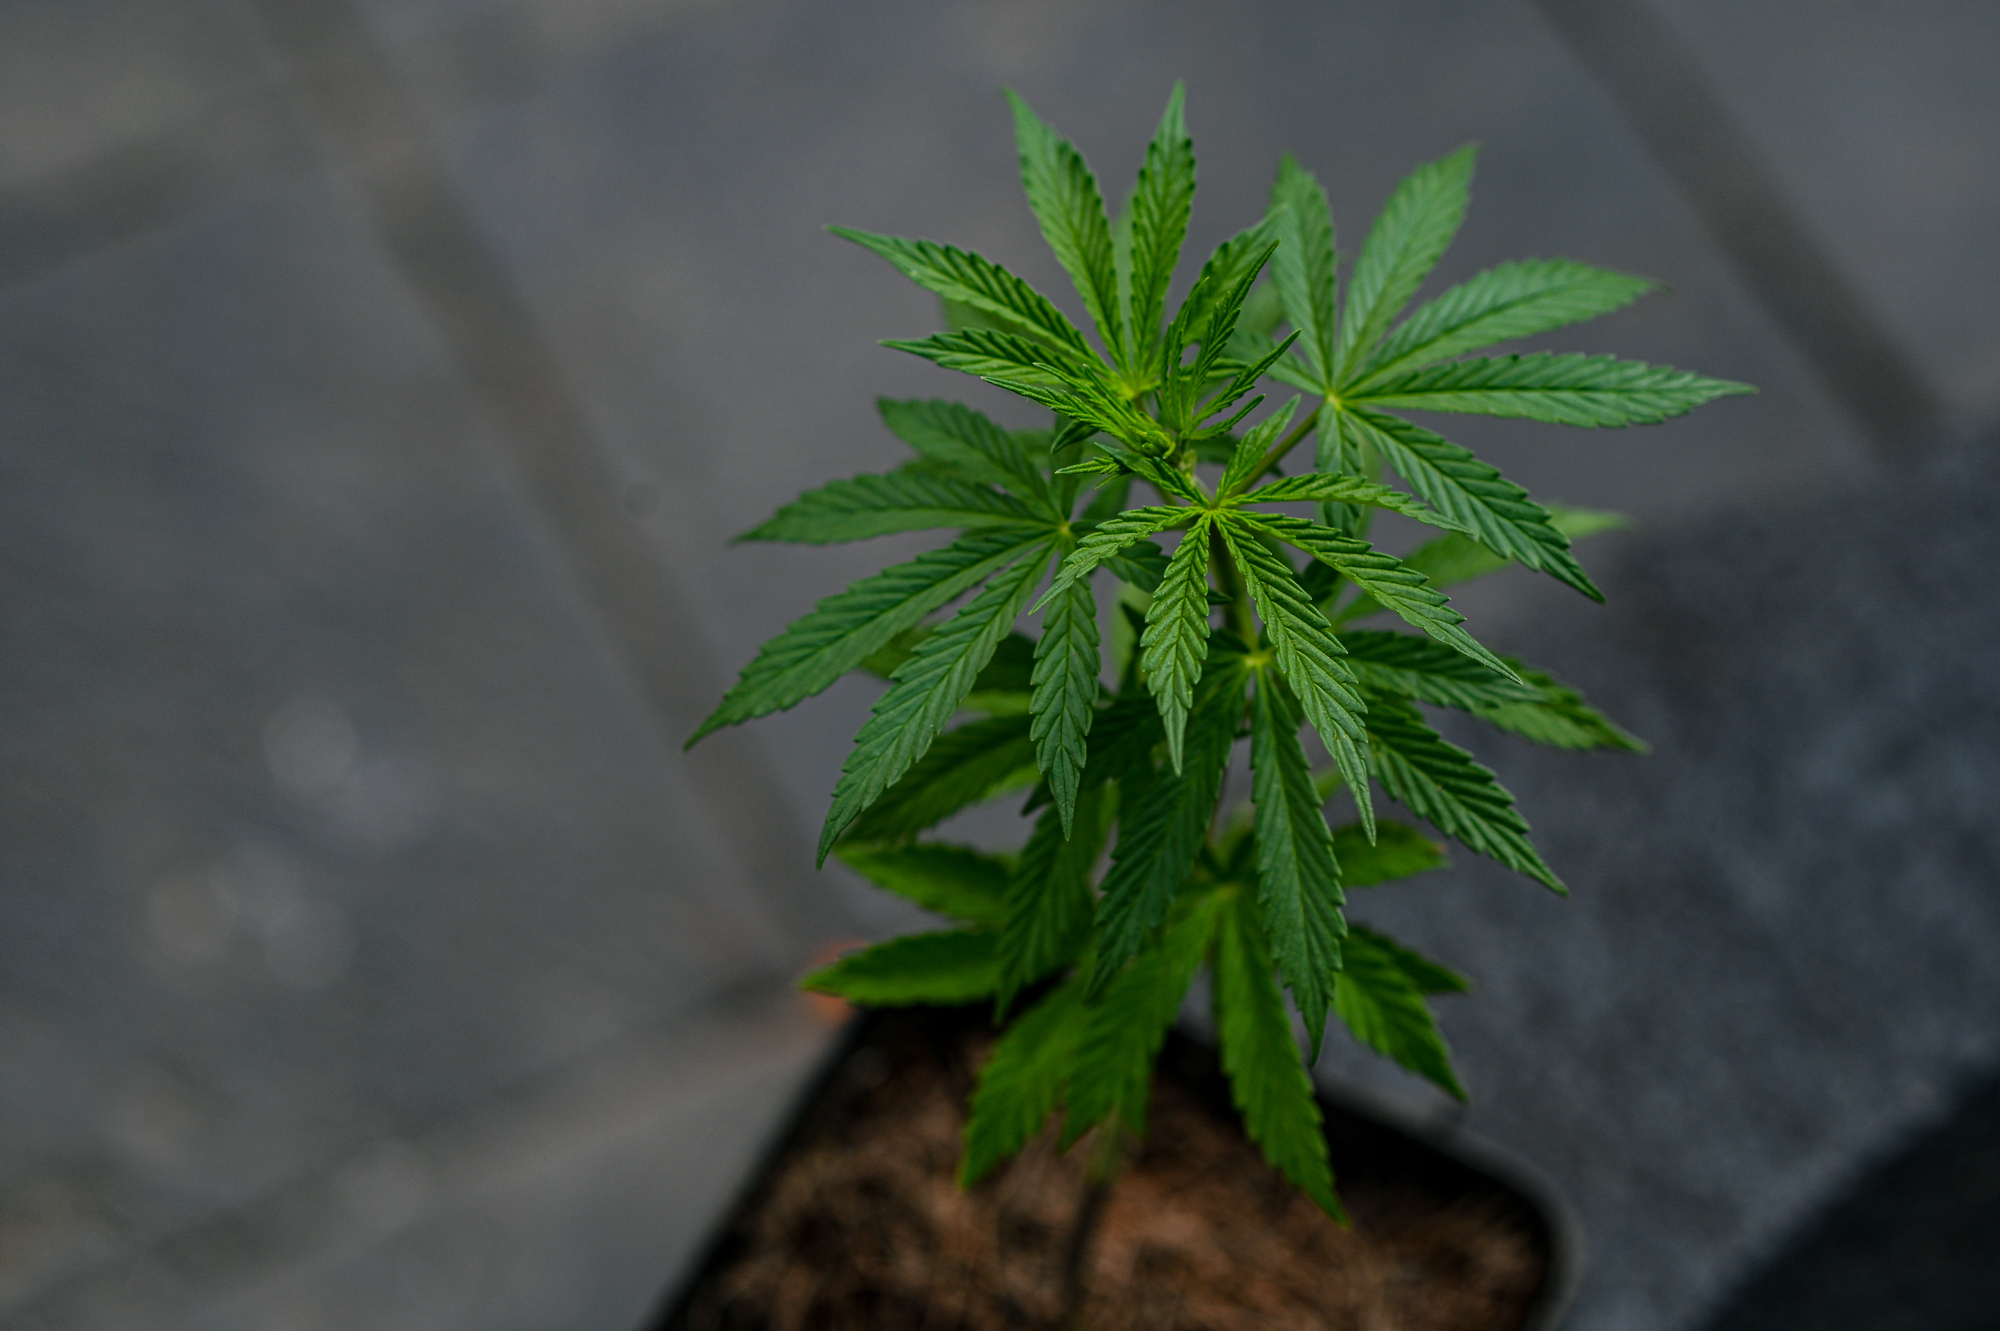 Kannabiszt termesztett a kertben a 71 éves nyugdíjas Ajkán - Blikk